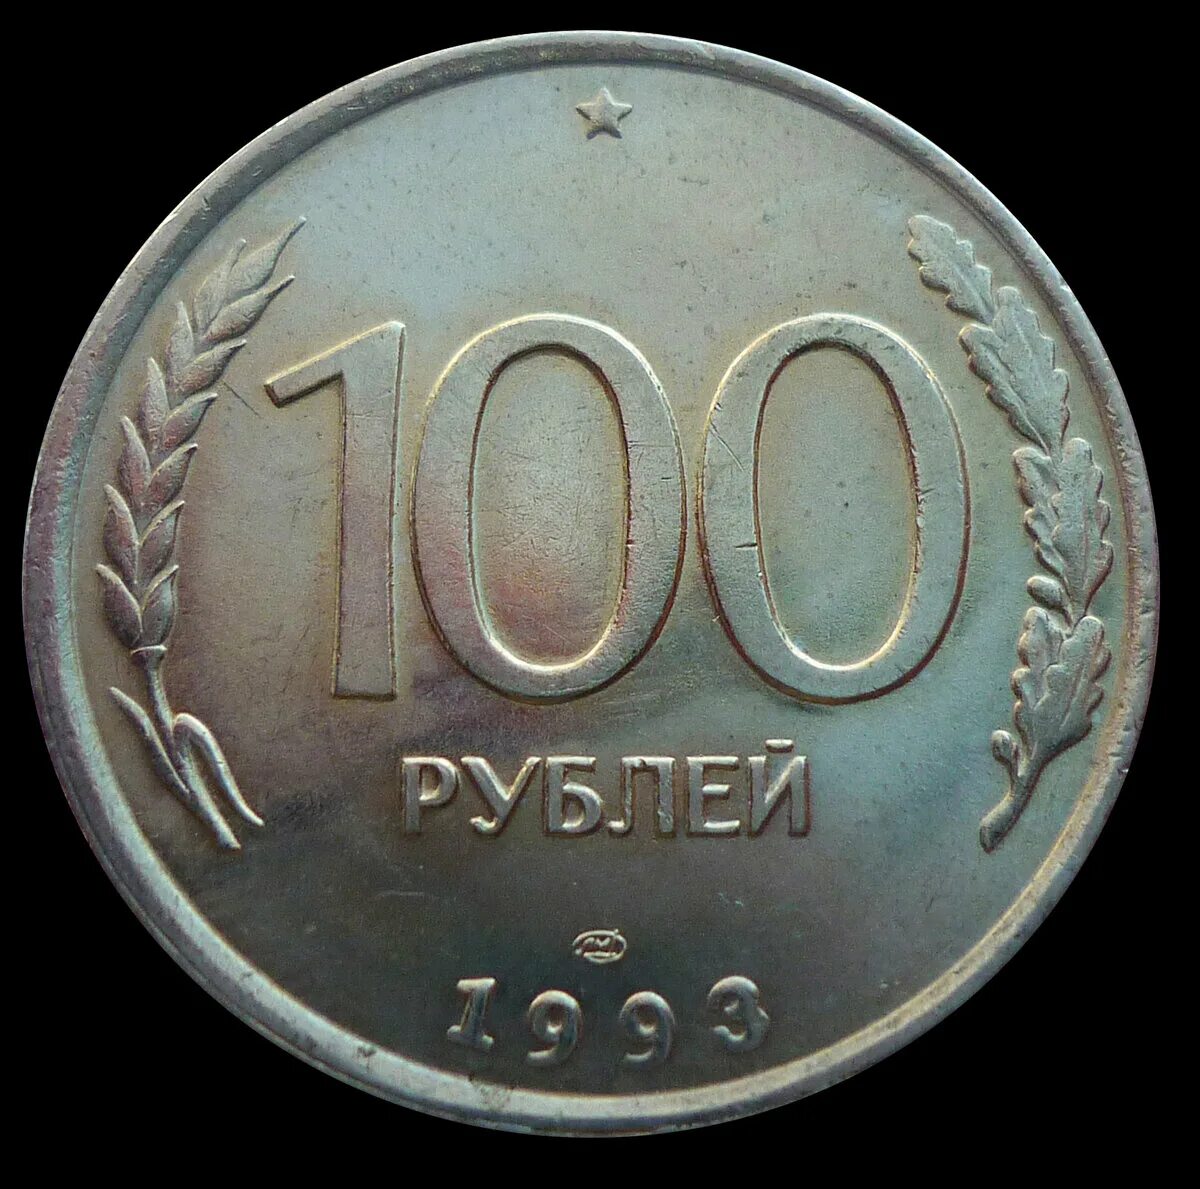 600 рублей россии. 100 Рублей 1993 года. Монеты 1993 года. 100 Руб СССР монета. Рубли 1993.